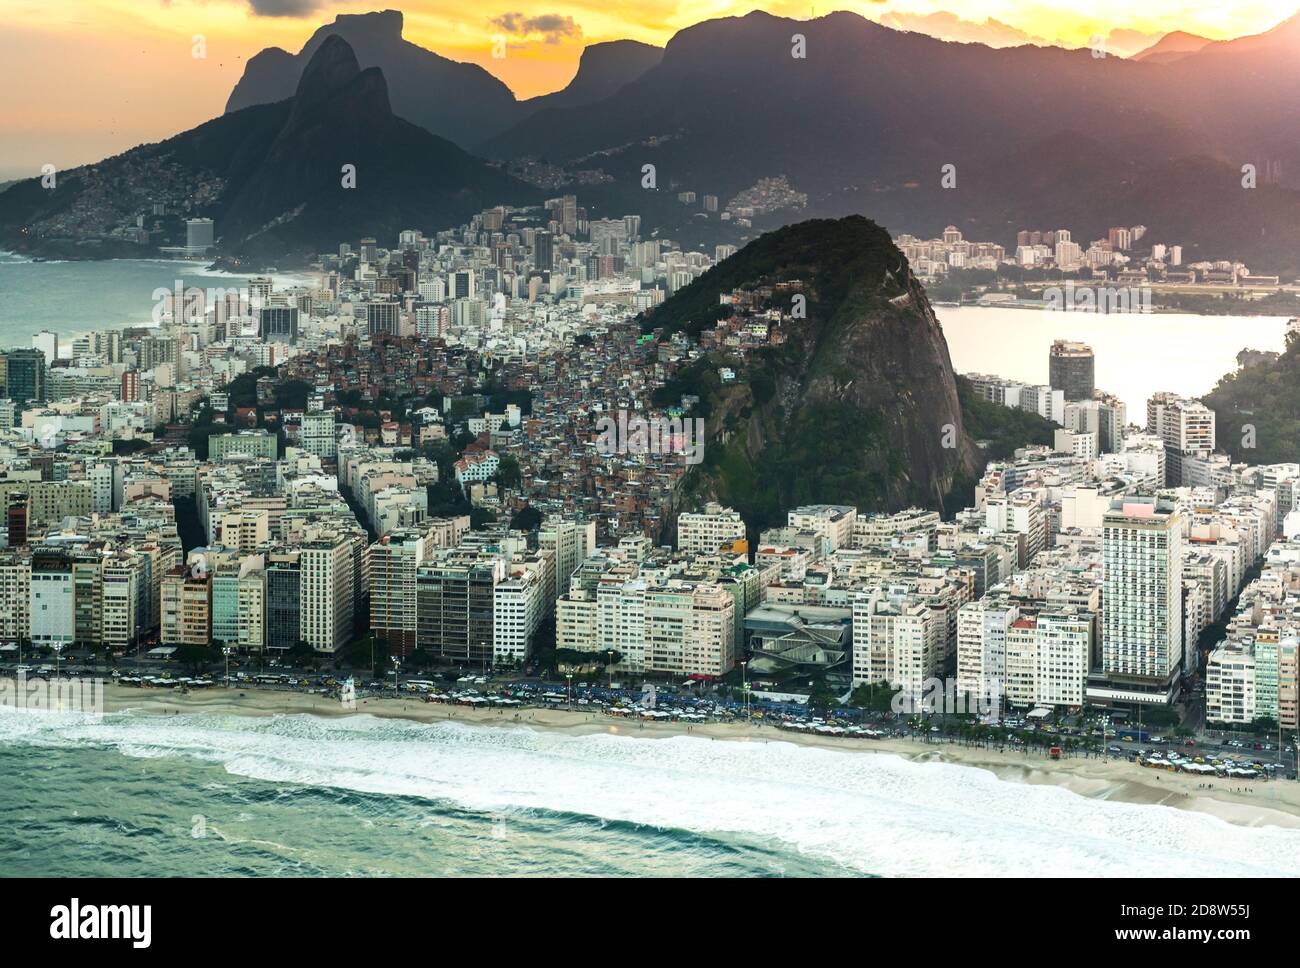 Plage de Copacabana à Rio de Janeiro prise de vue aérienne au coucher du soleil Banque D'Images